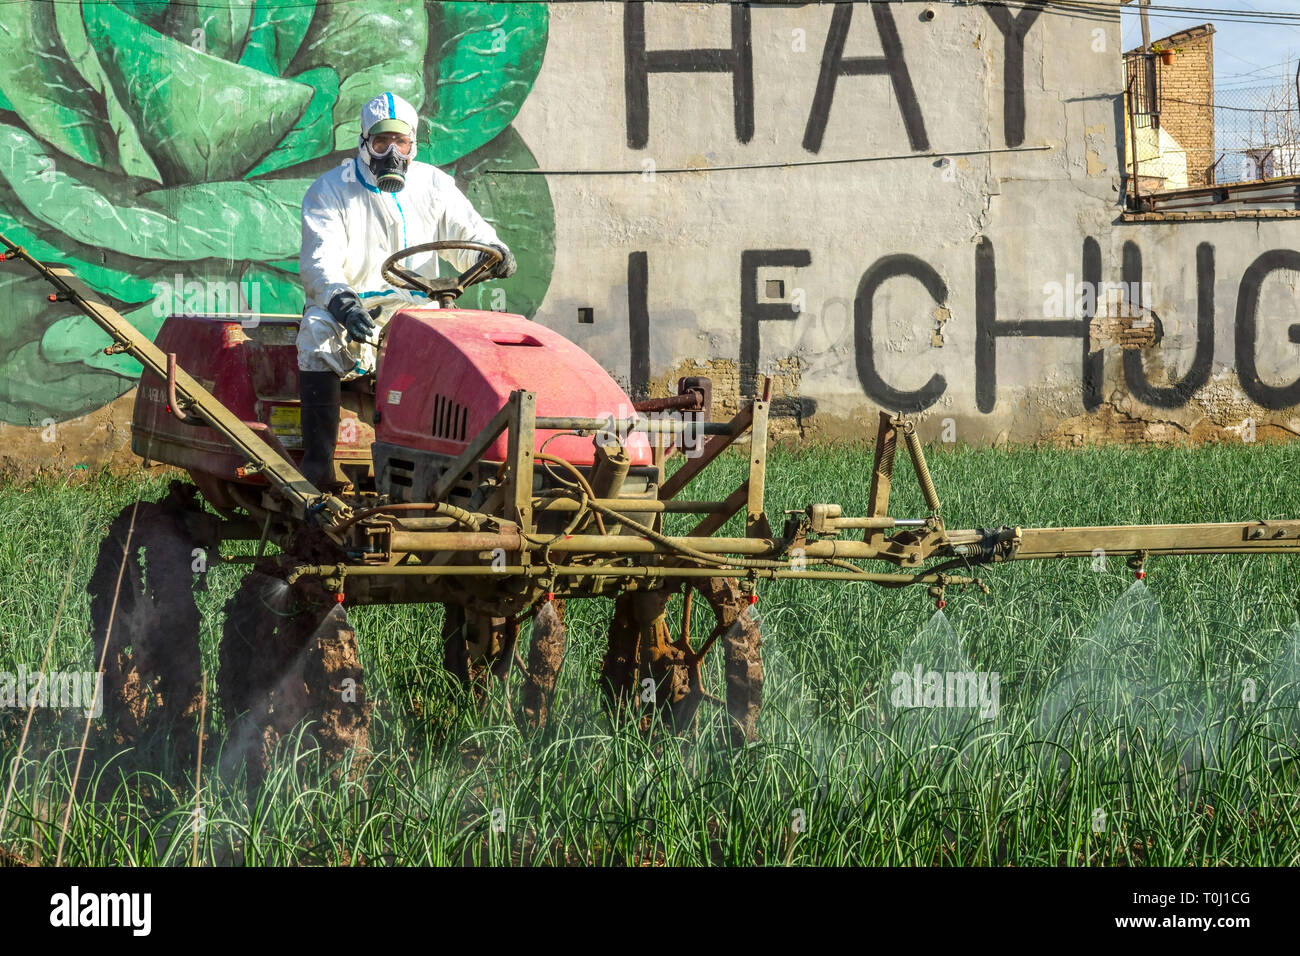 Ein Landwirt in einem Schutzanzug trägt Chemikalien, Sprühen auf die Zwiebel Feld, Valencia Spanien Landwirtschaft Landwirt Europa Stockfoto